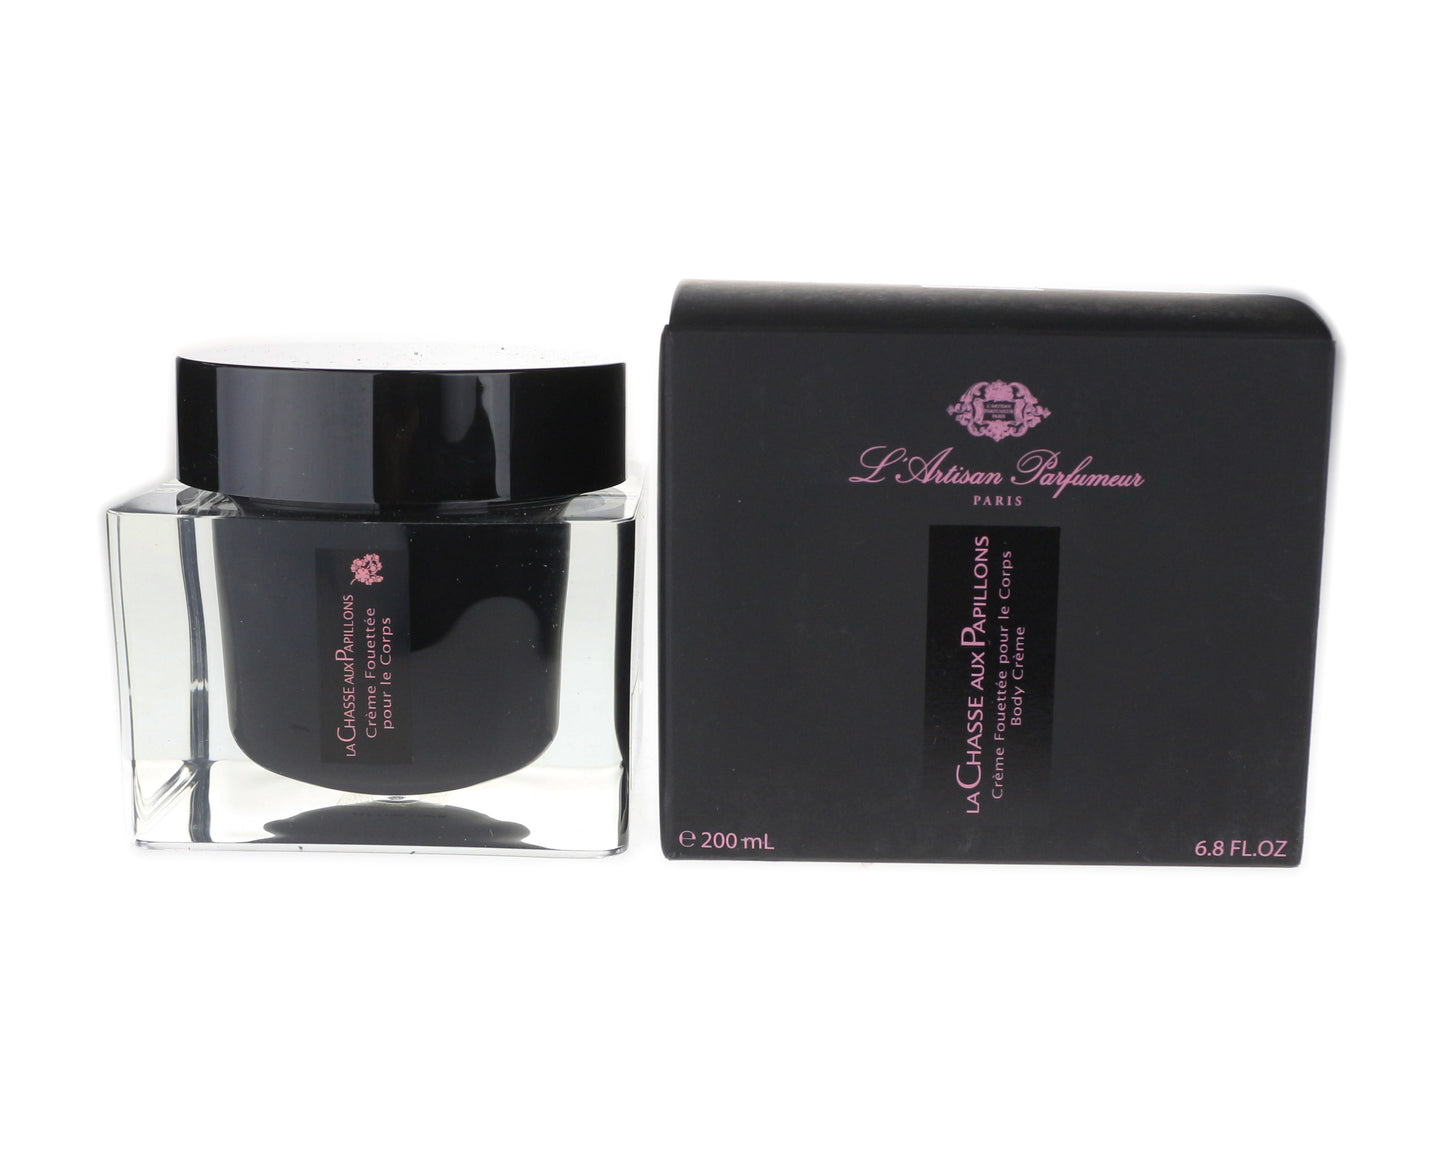 L'Artisan Parfumeur La Chasse Aux Papillons Body Cream 6.8Oz/200ml NEW